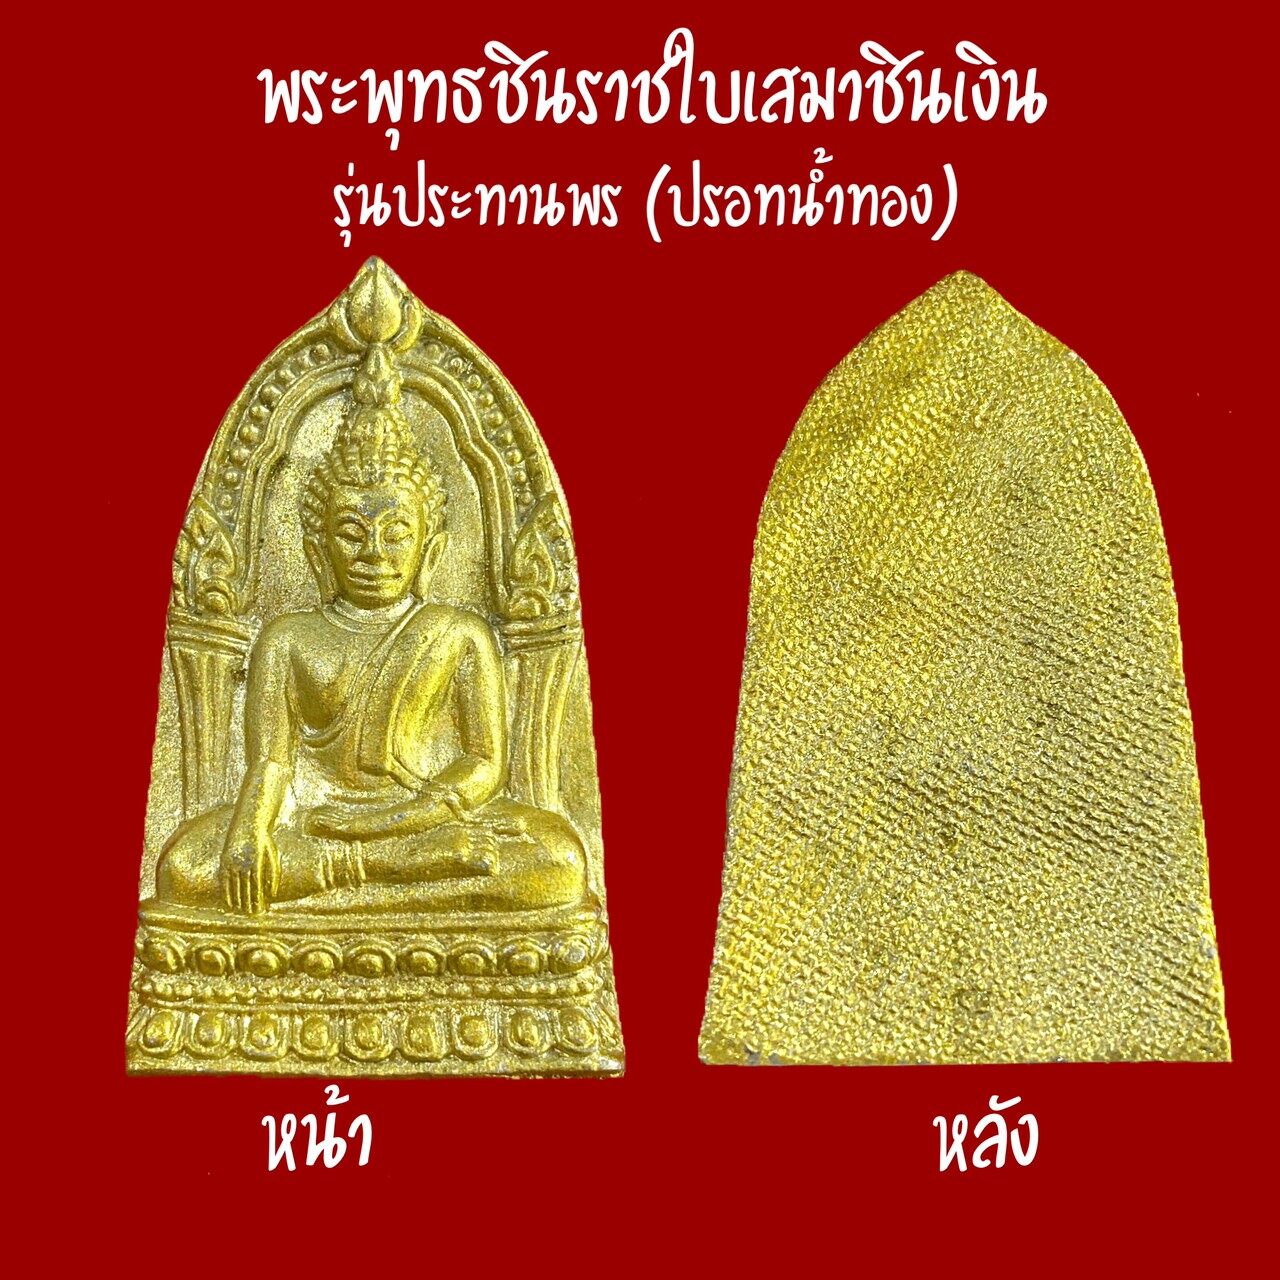 พระพุทธชินราชใบเสมาชินเงิน (ปรอทน้ำทอง) ปี2557 วัดพระศรีรัตนมหาธาตุวรมหาวิหาร (วัดใหญ่) จ.พิษณุโลก รับประกันพระแท้